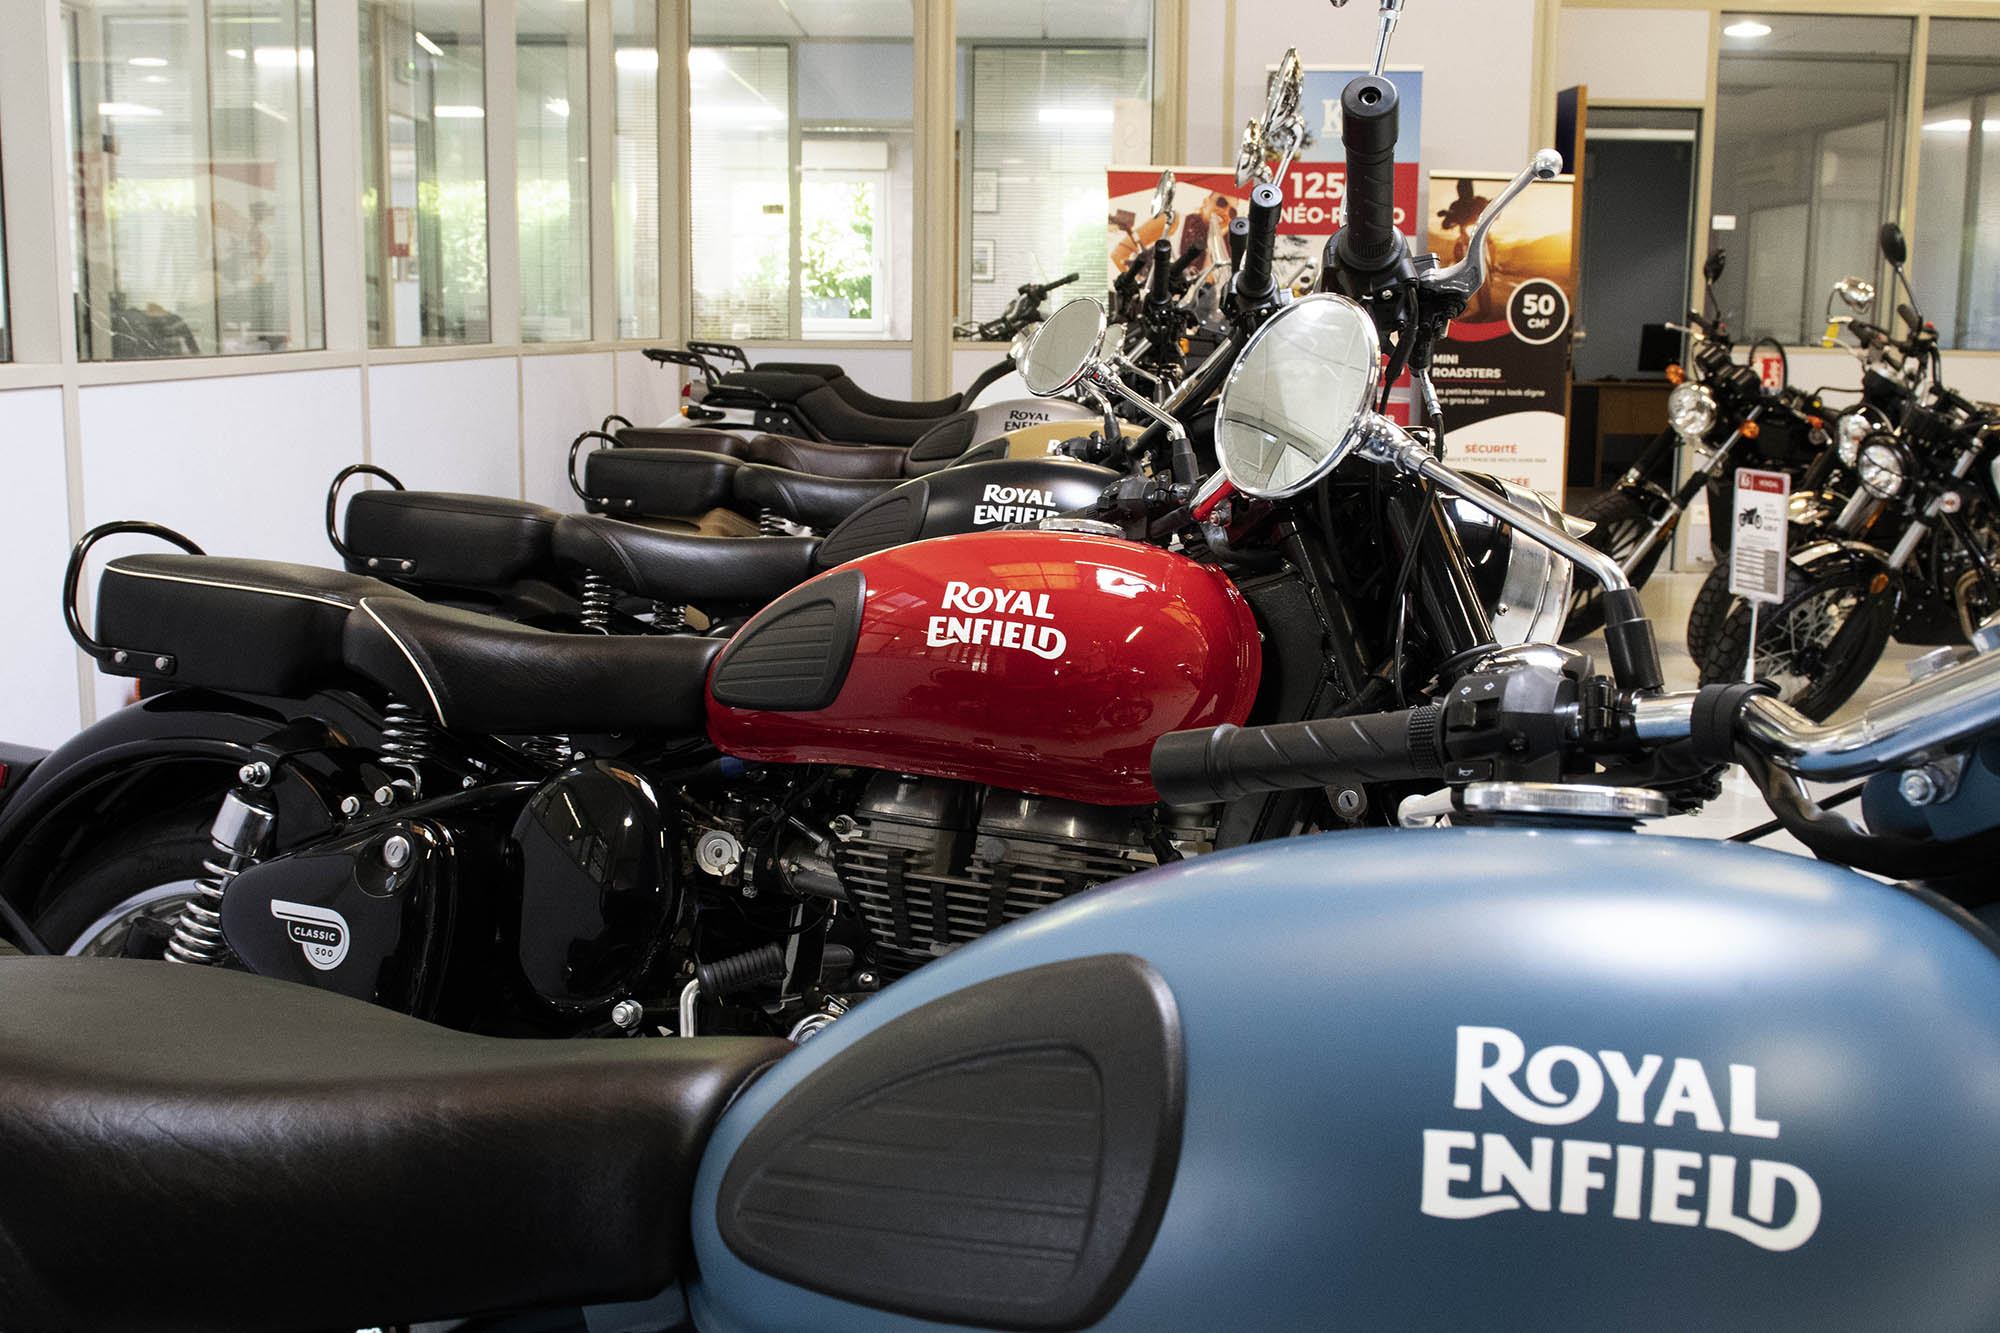 photo du stock de motos à l'intérieur avec des motos Royal Enflield